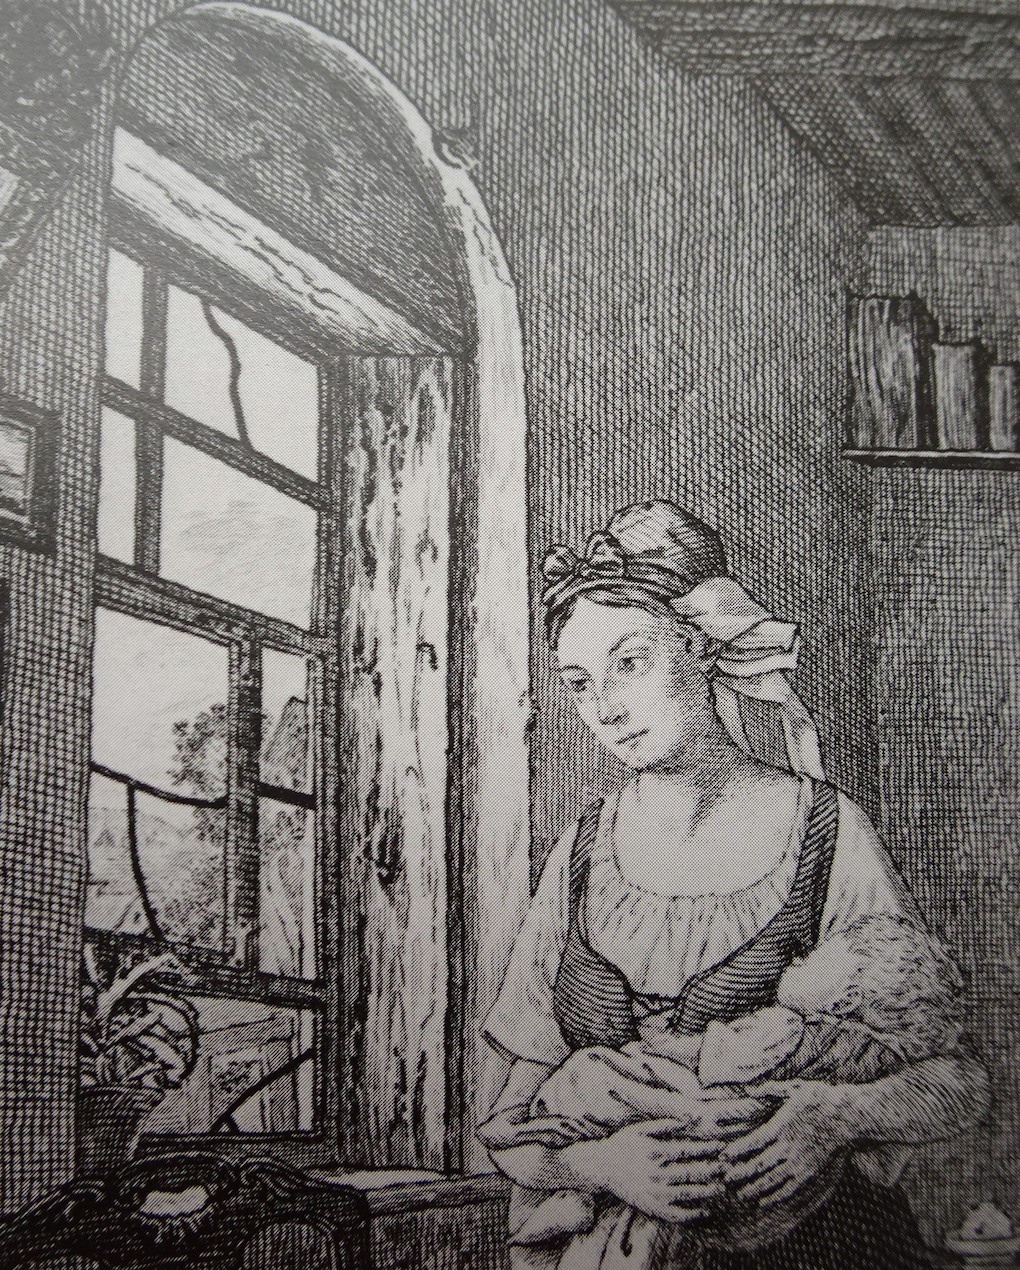 Pötschke według Ludwiga Mosta, Widok przez okno, fragment grafiki według obrazu Oczekująca (Kobieta wyczekująca męża), 1832, miedzioryt, akwaforta na papierze, rycina reprodukcyjna, Muzeum Narodowe w Szczecinie